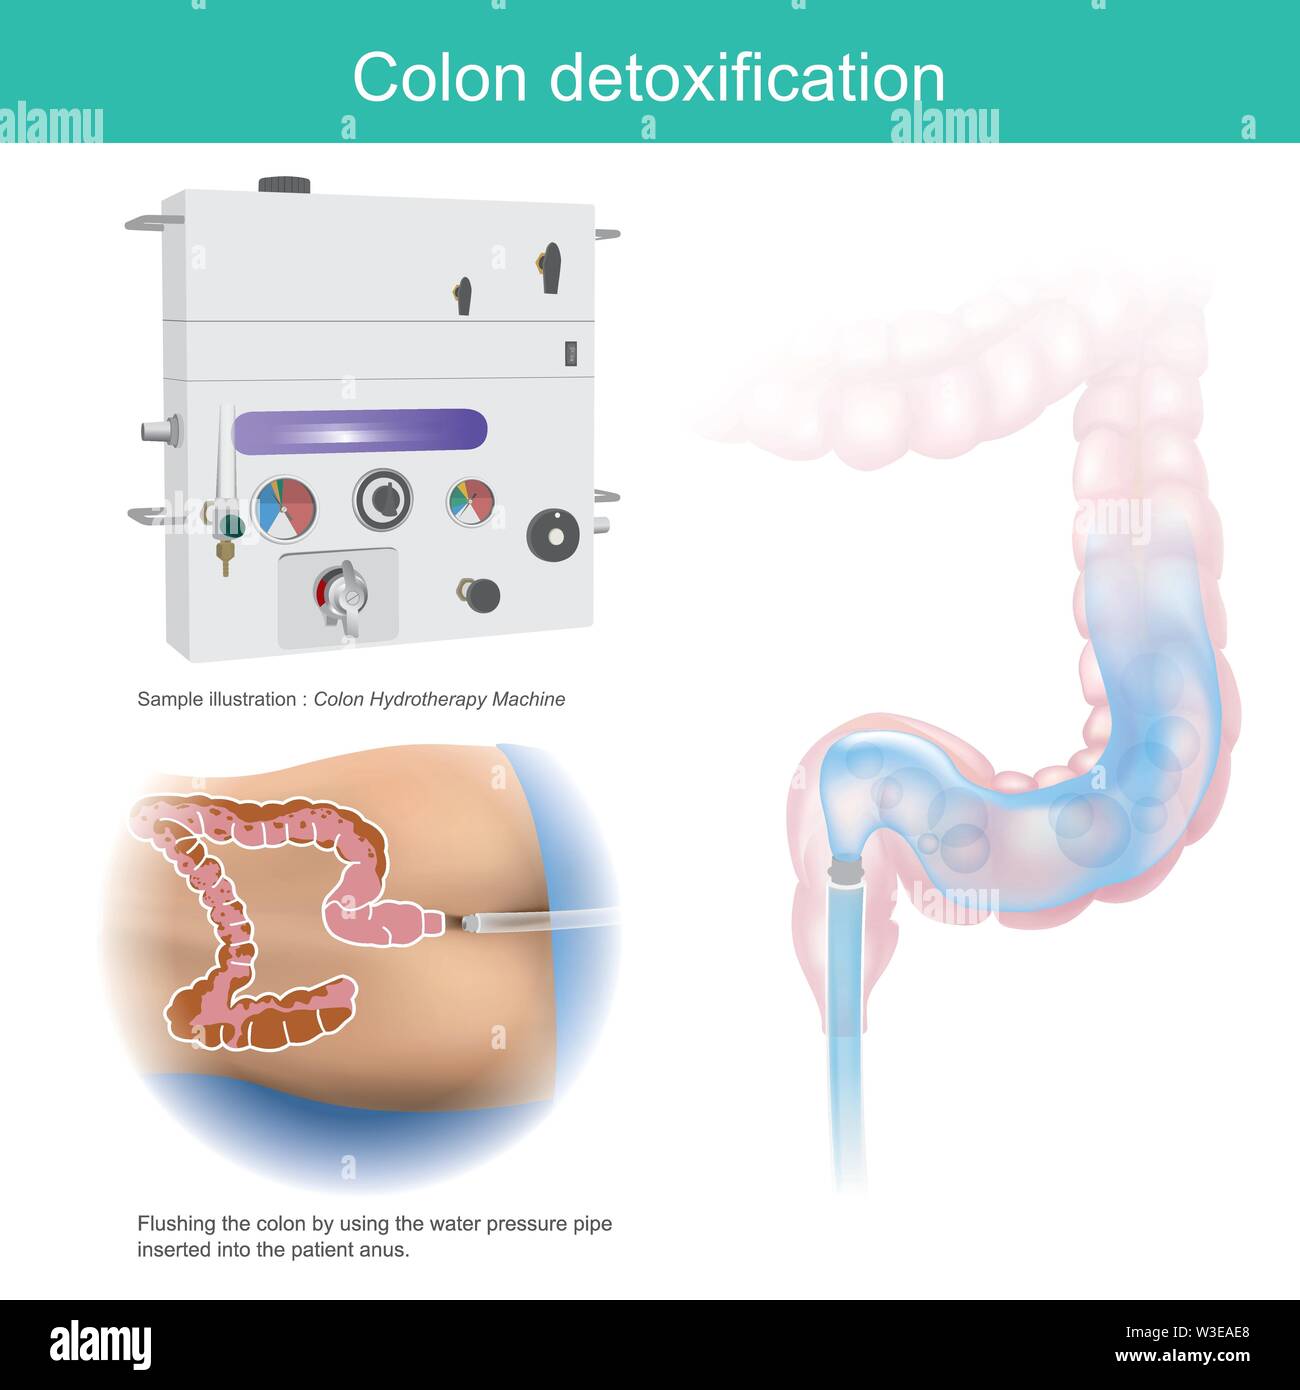 La disintossicazione del colon. Illustrazione del campione il lavaggio del colon mediante la pressione dell'acqua tubo inserito nel paziente ano. Illustrazione Vettoriale